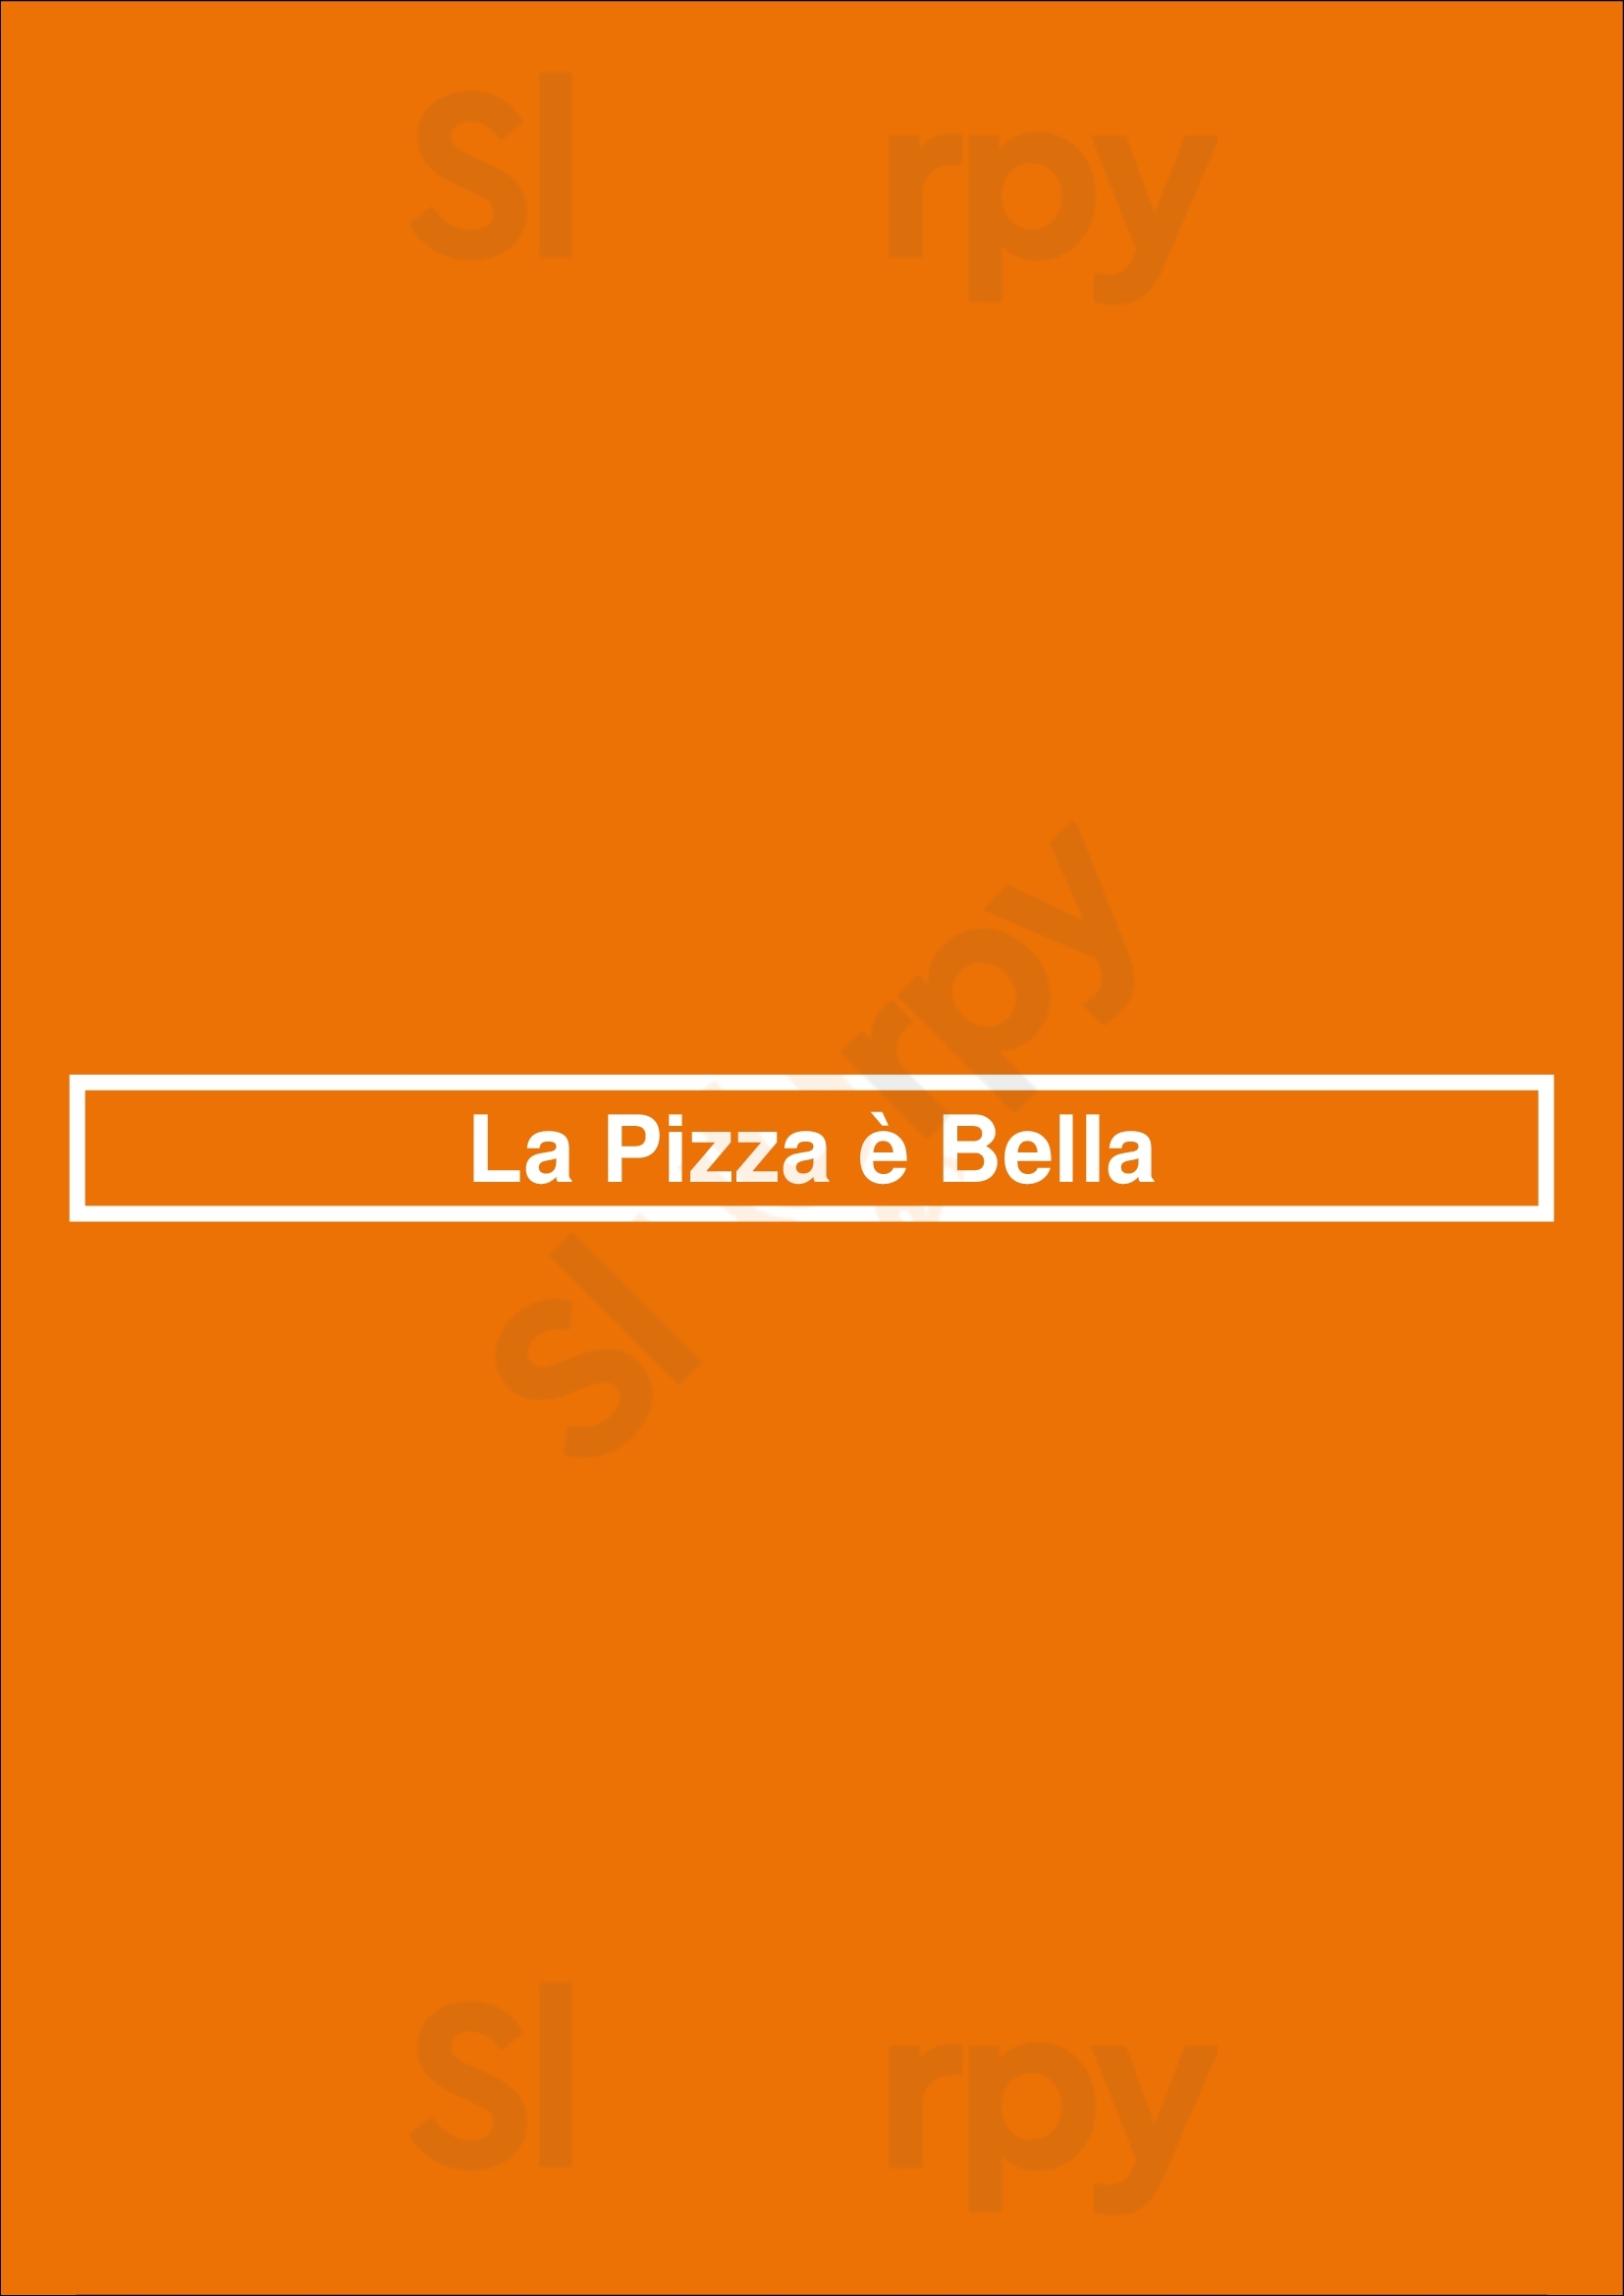 La Pizza è Bella Bruxelles Menu - 1